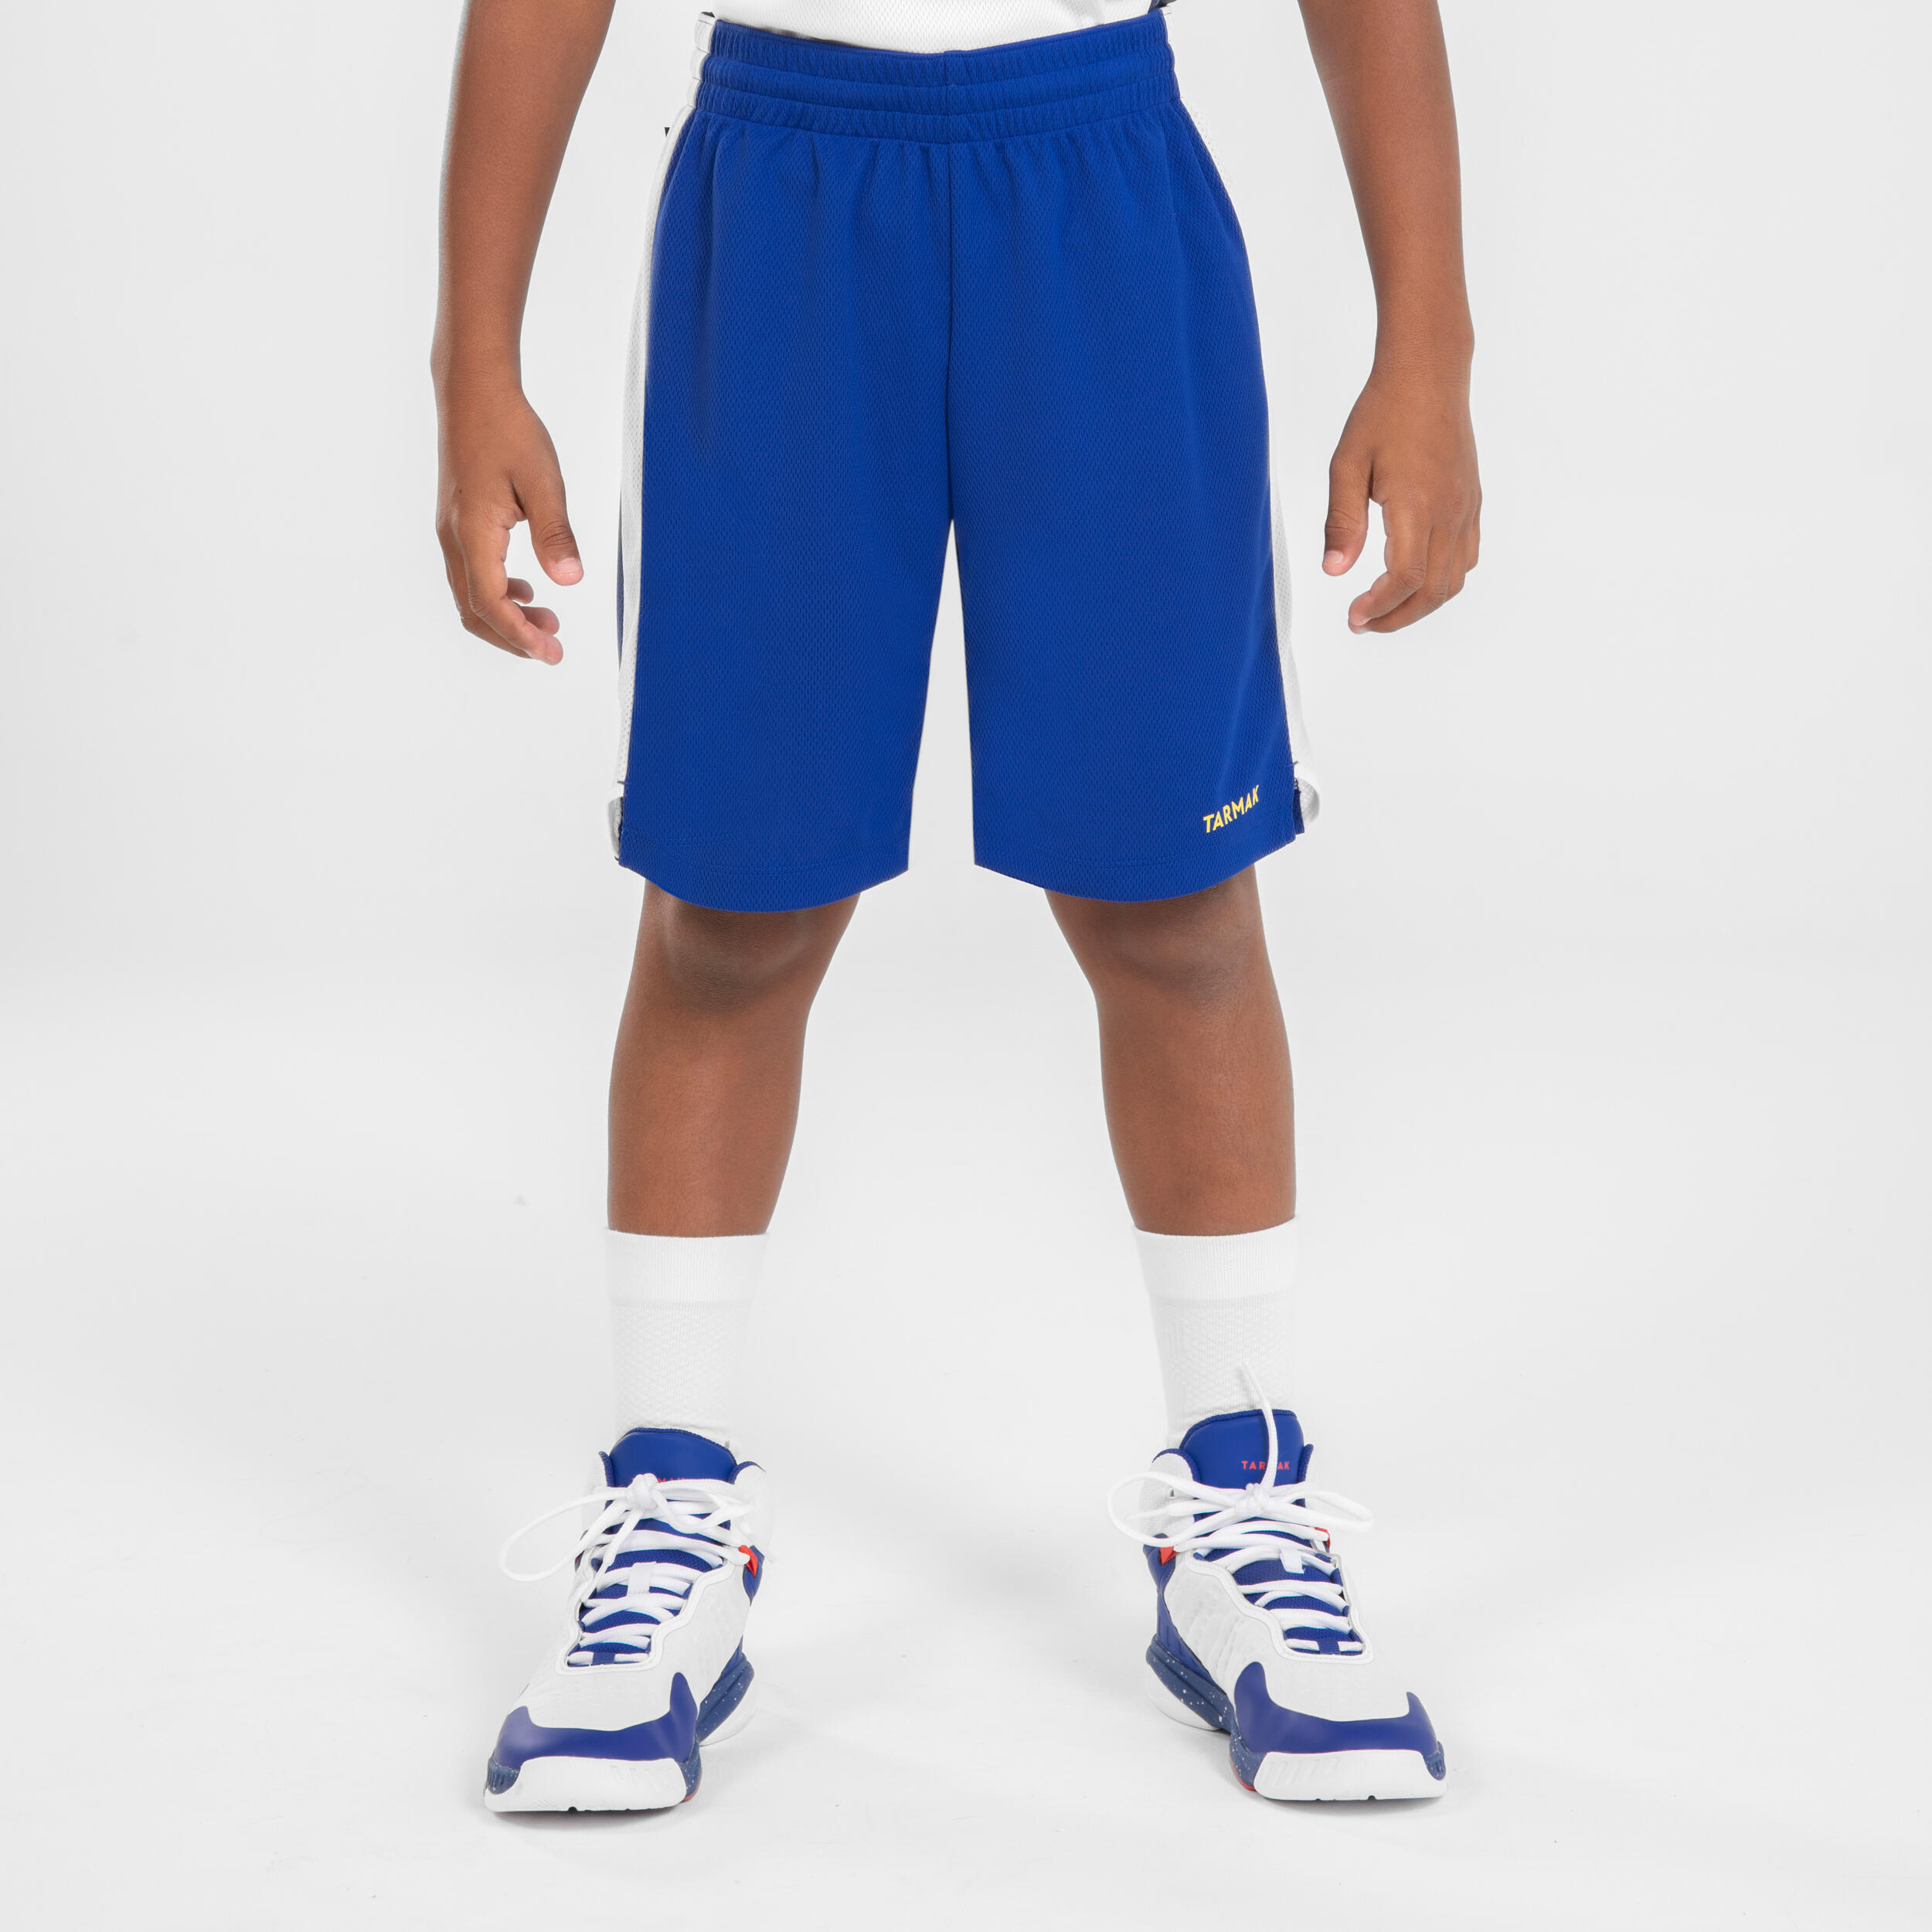 Kinder Basketball Shorts - SH500 blau